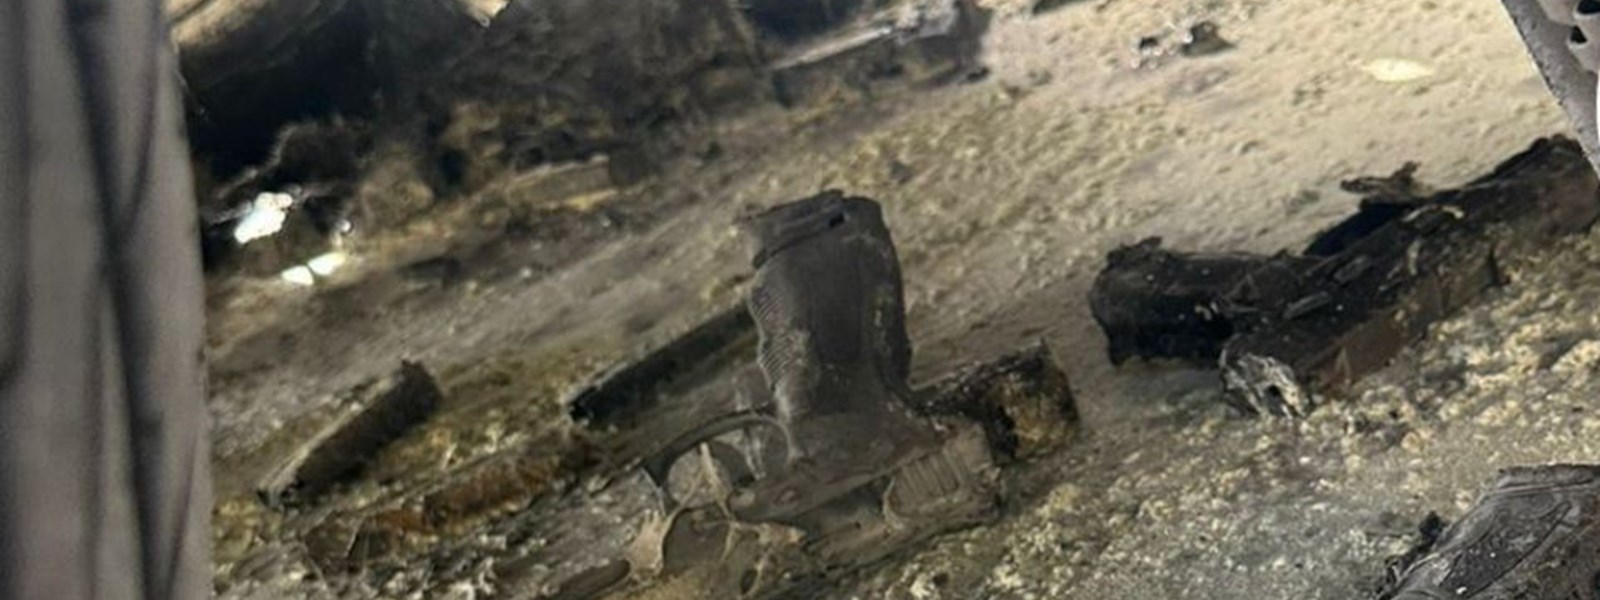 عدد من المسدسات المهربة التي سقطت من الشاحنة المحترقة أول من أمس في منطقة البترون.